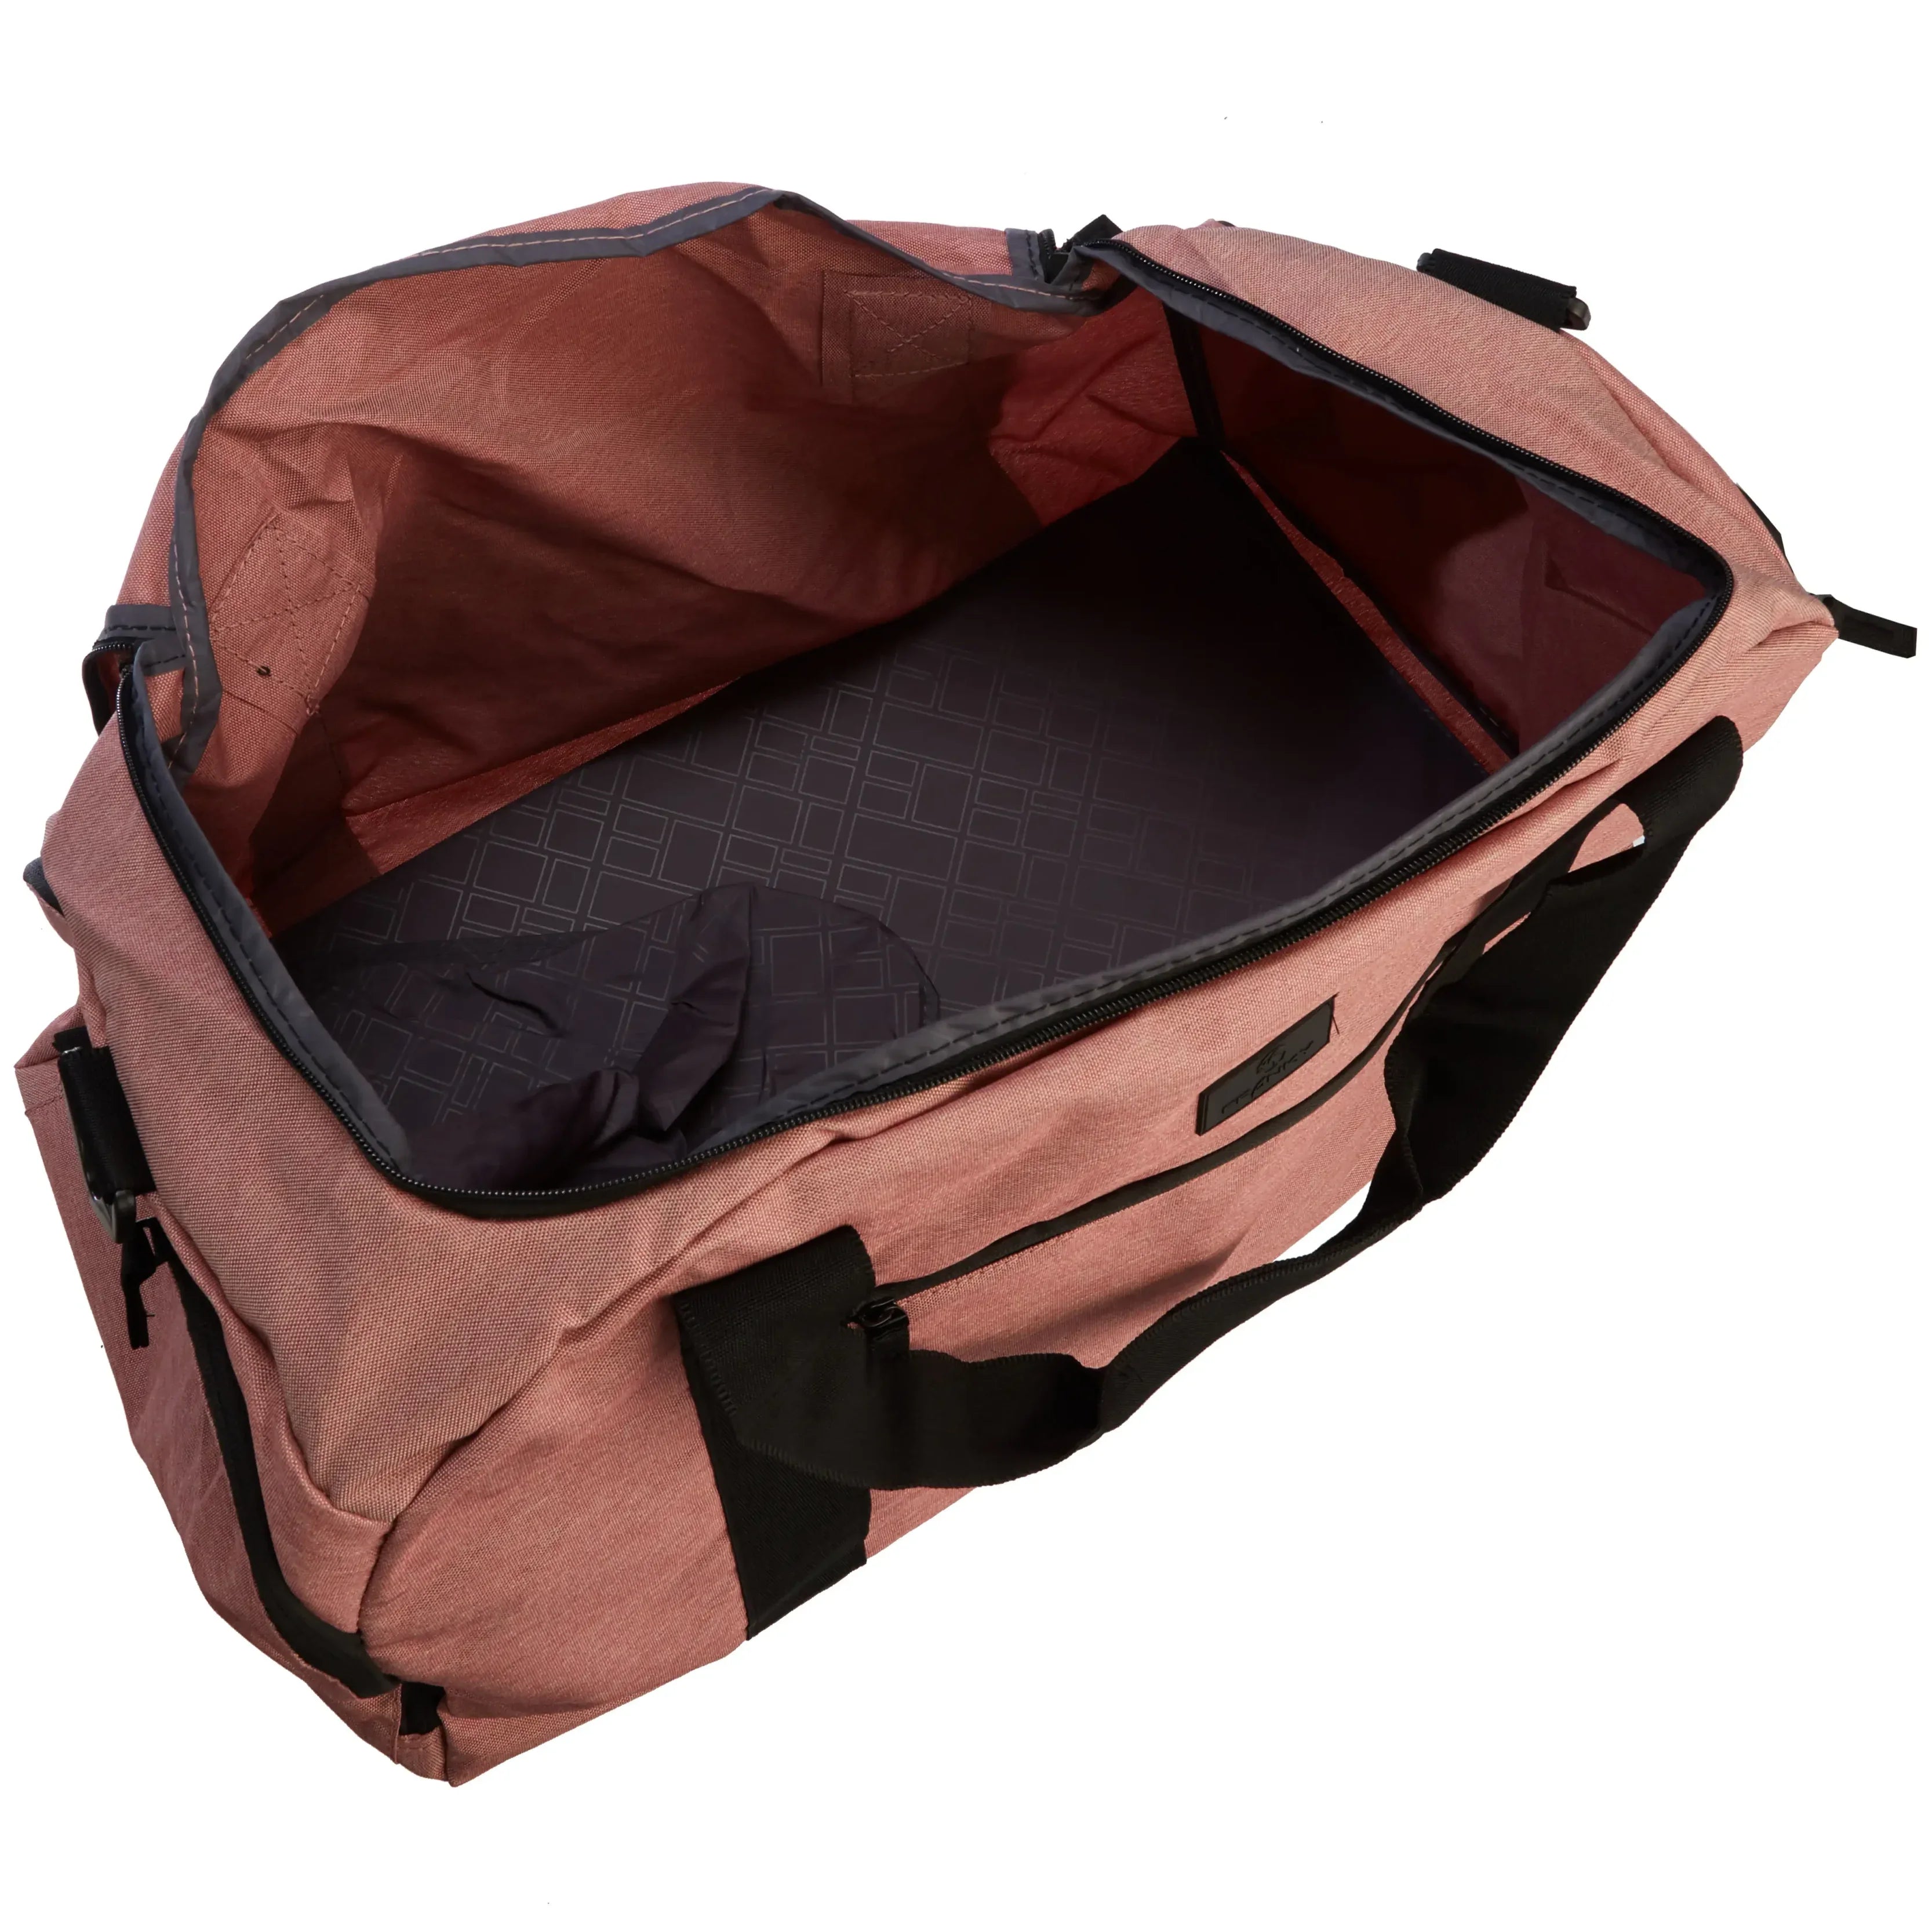 koffer-direkt.de Travel bag M 50 cm - black